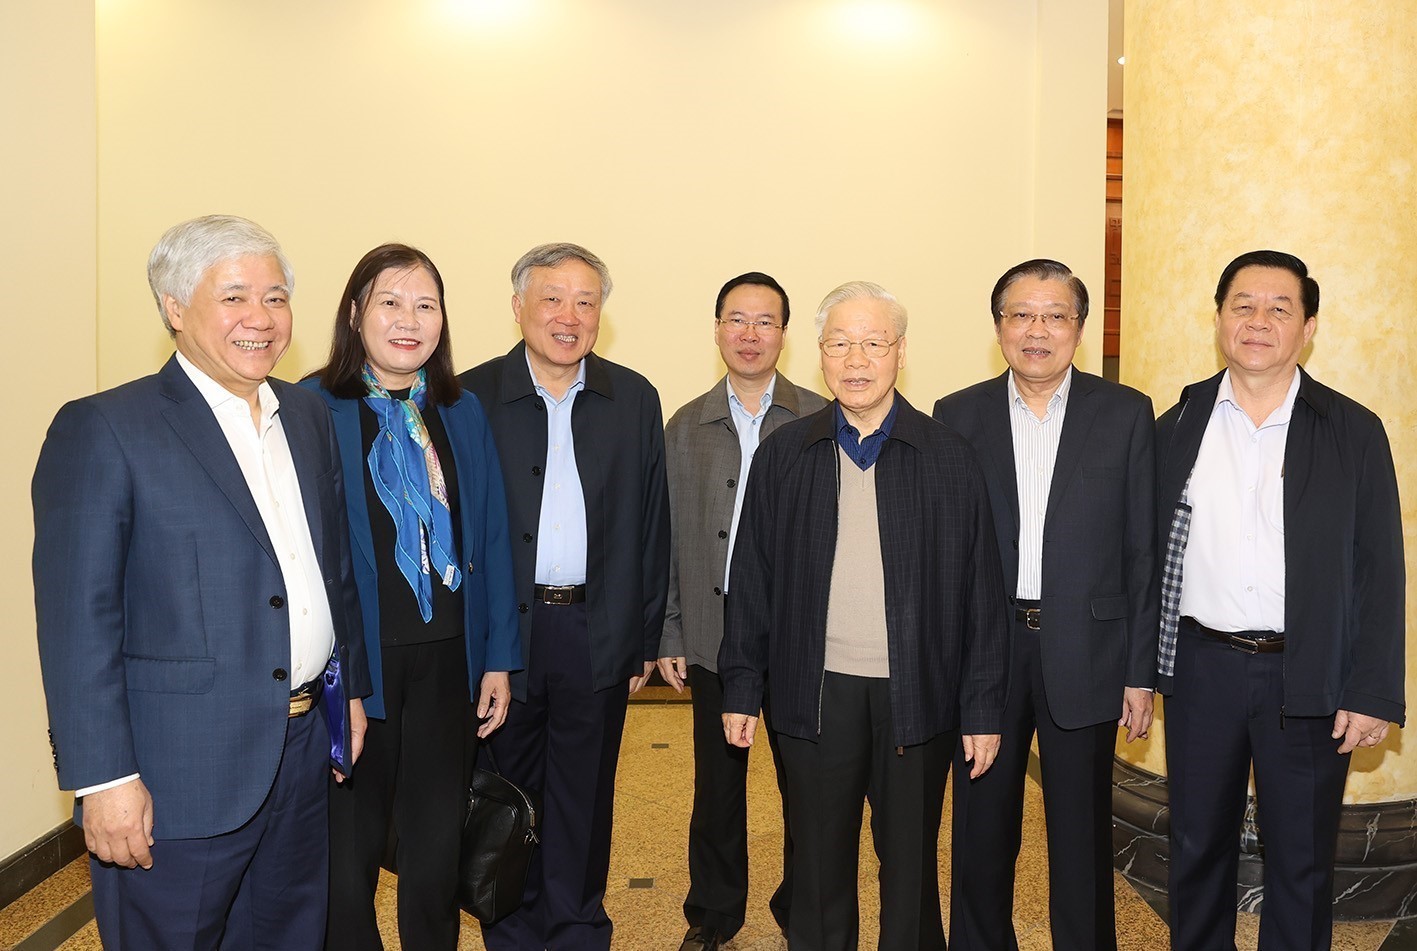 Tổng Bí thư Nguyễn Phú Trọng với các thành viên Ban Chỉ đạo dự phiên họp. Ảnh: Trí Dũng